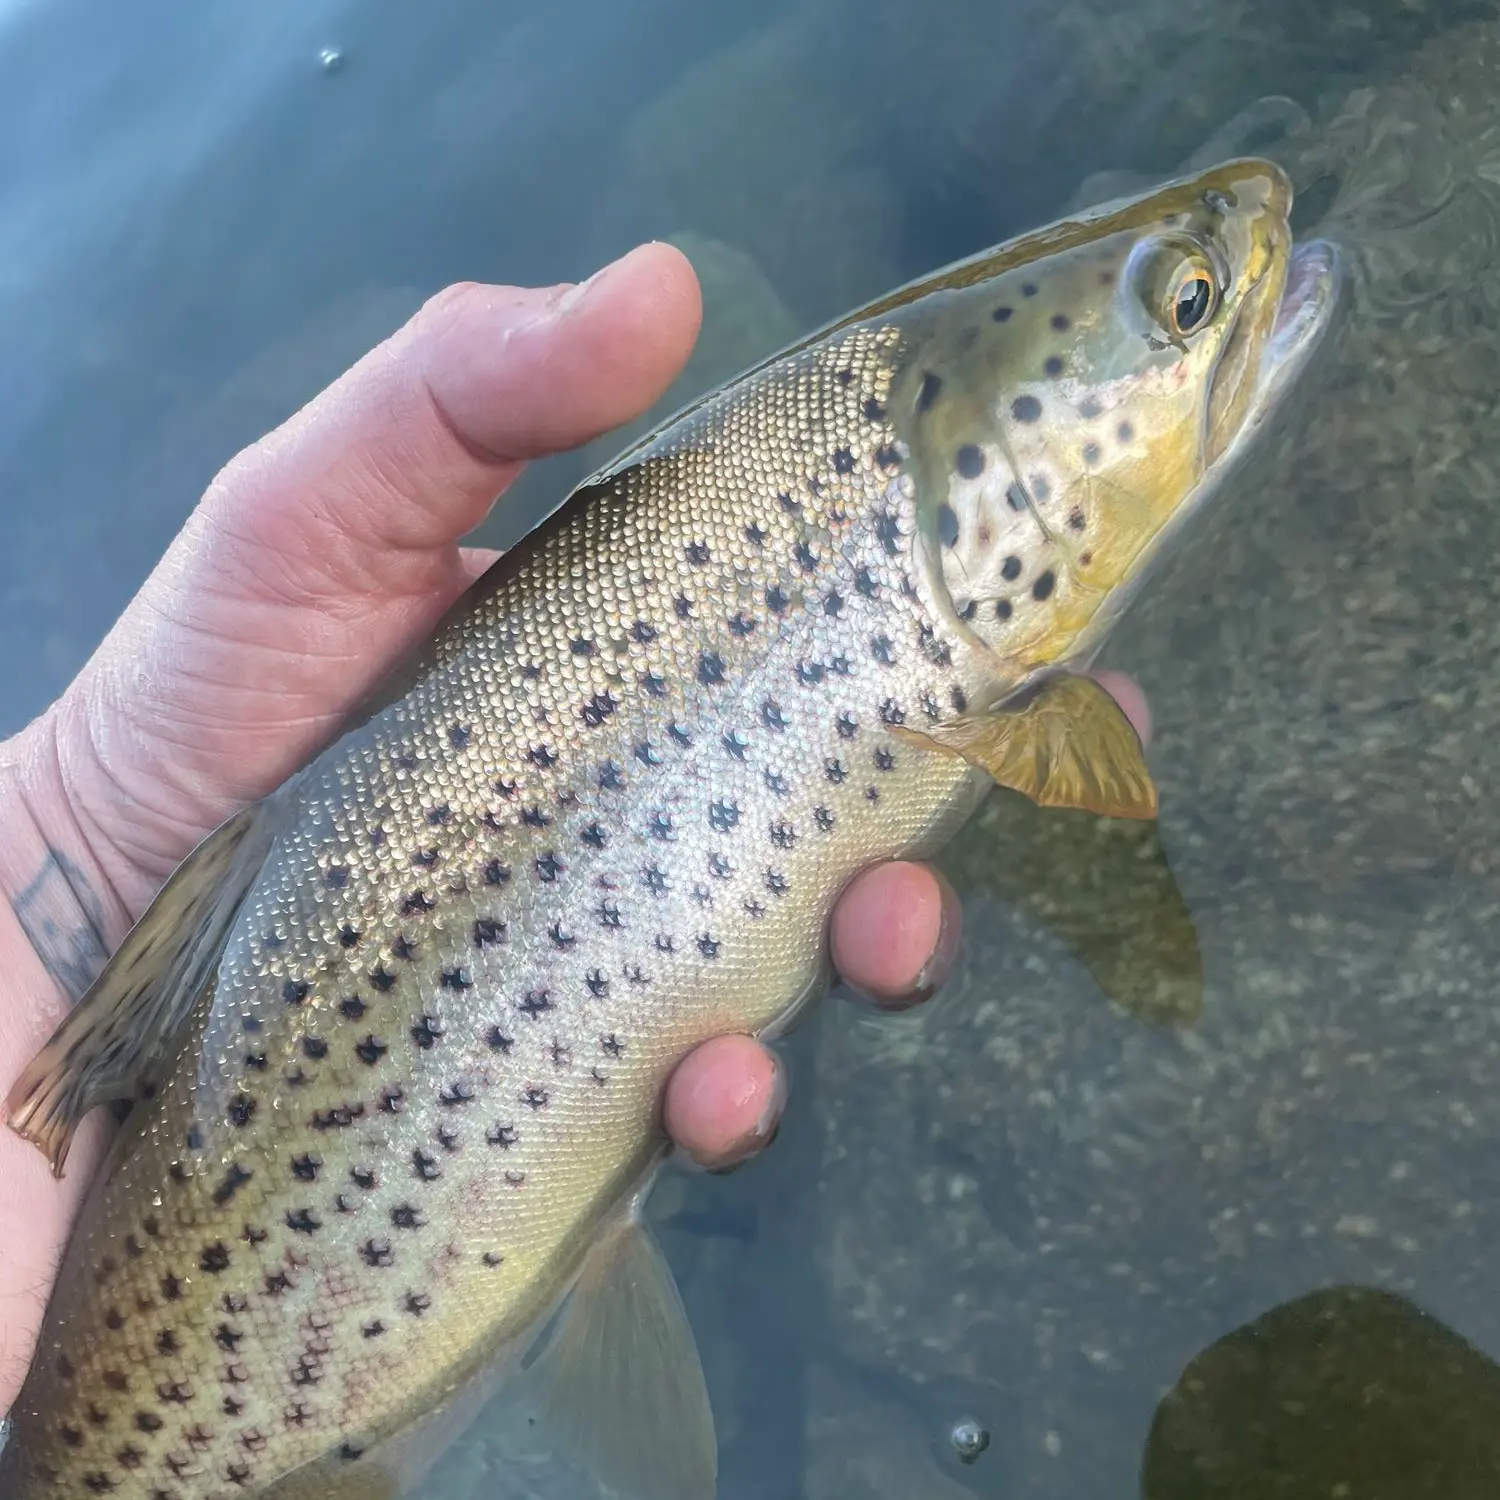 Caples Lake Fish Report - Kirkwood, CA (Alpine County)